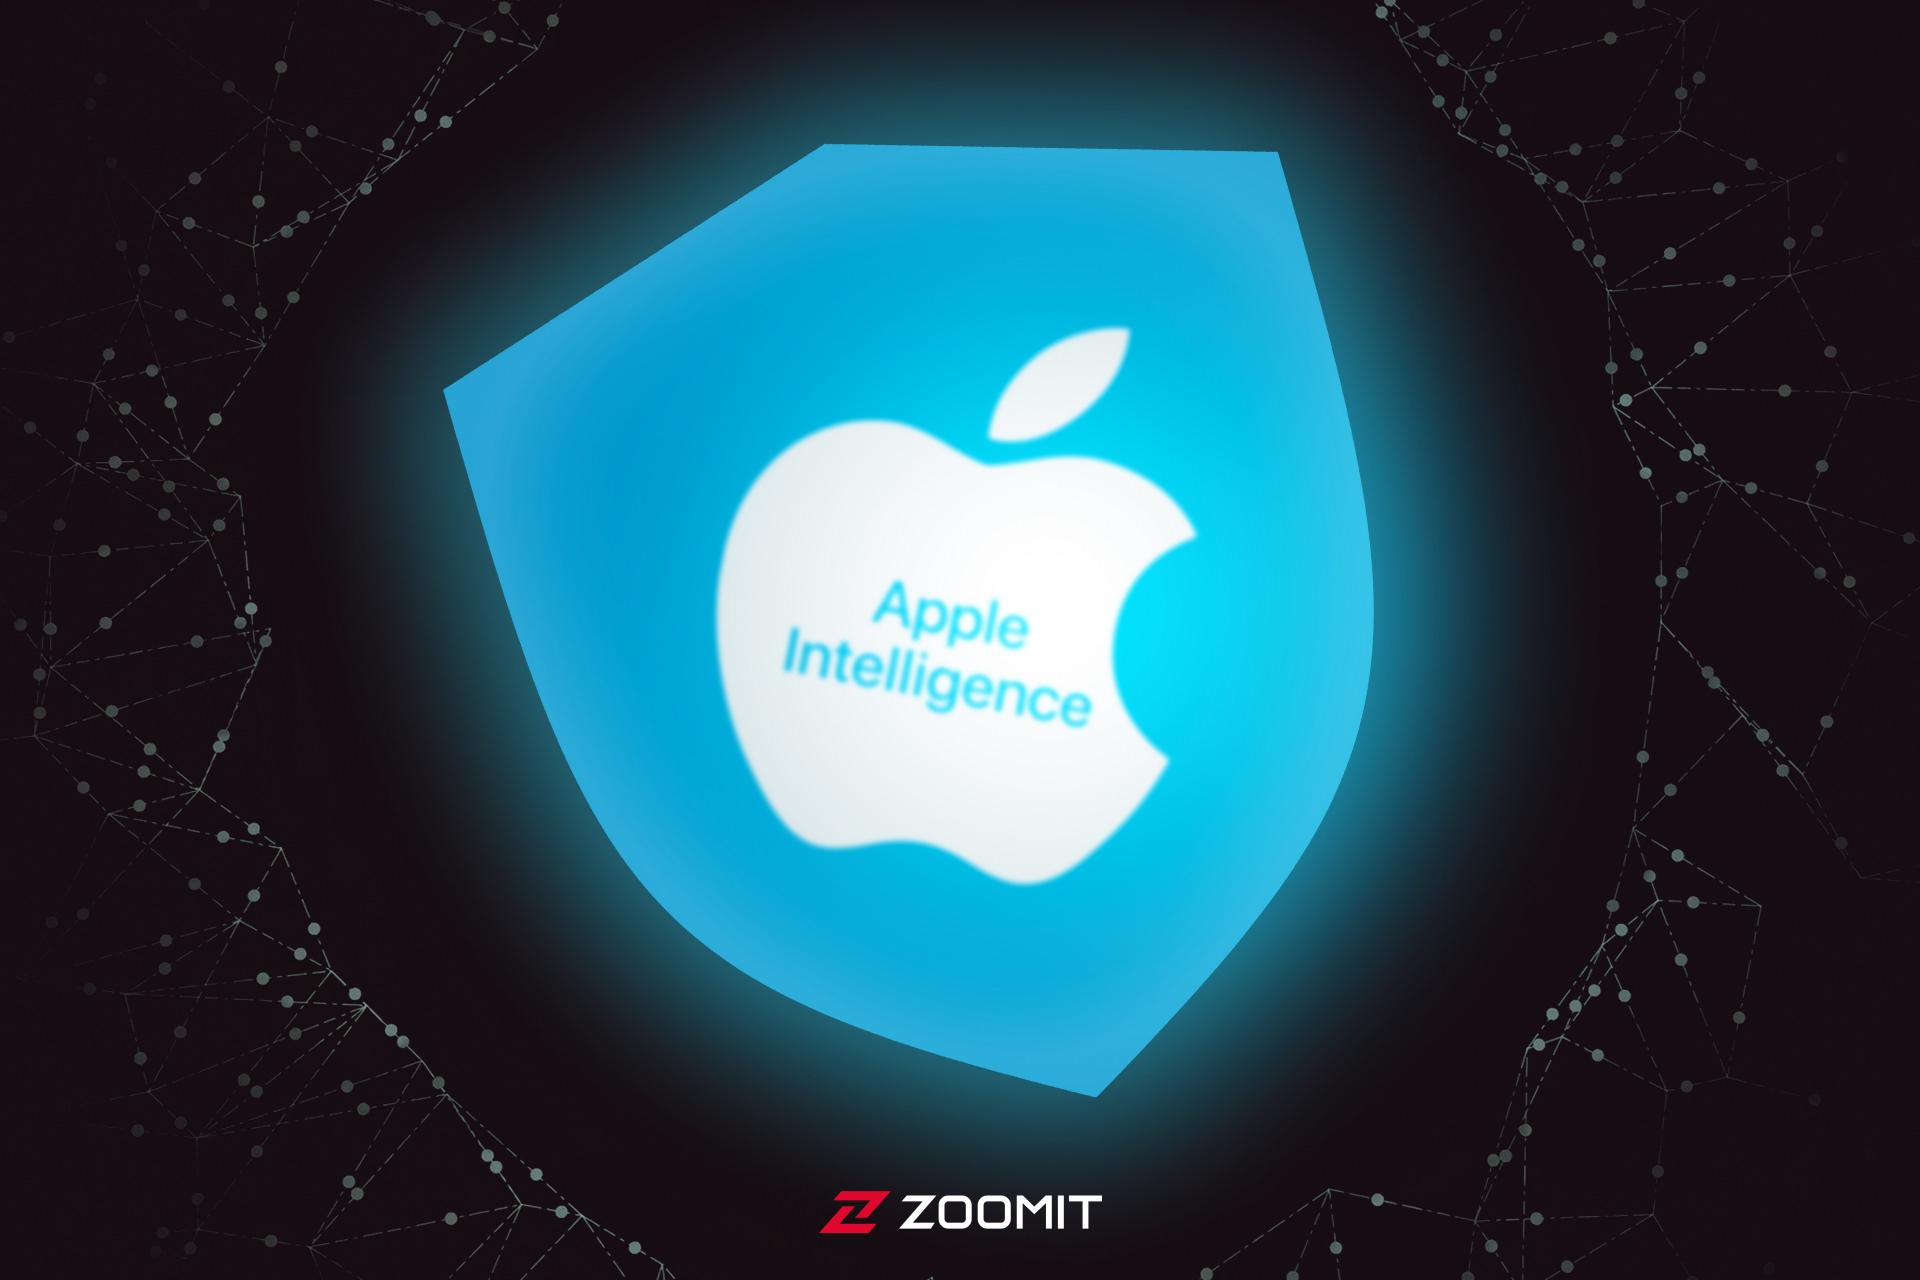 اپل اینتلیجنس / Apple Intelligence